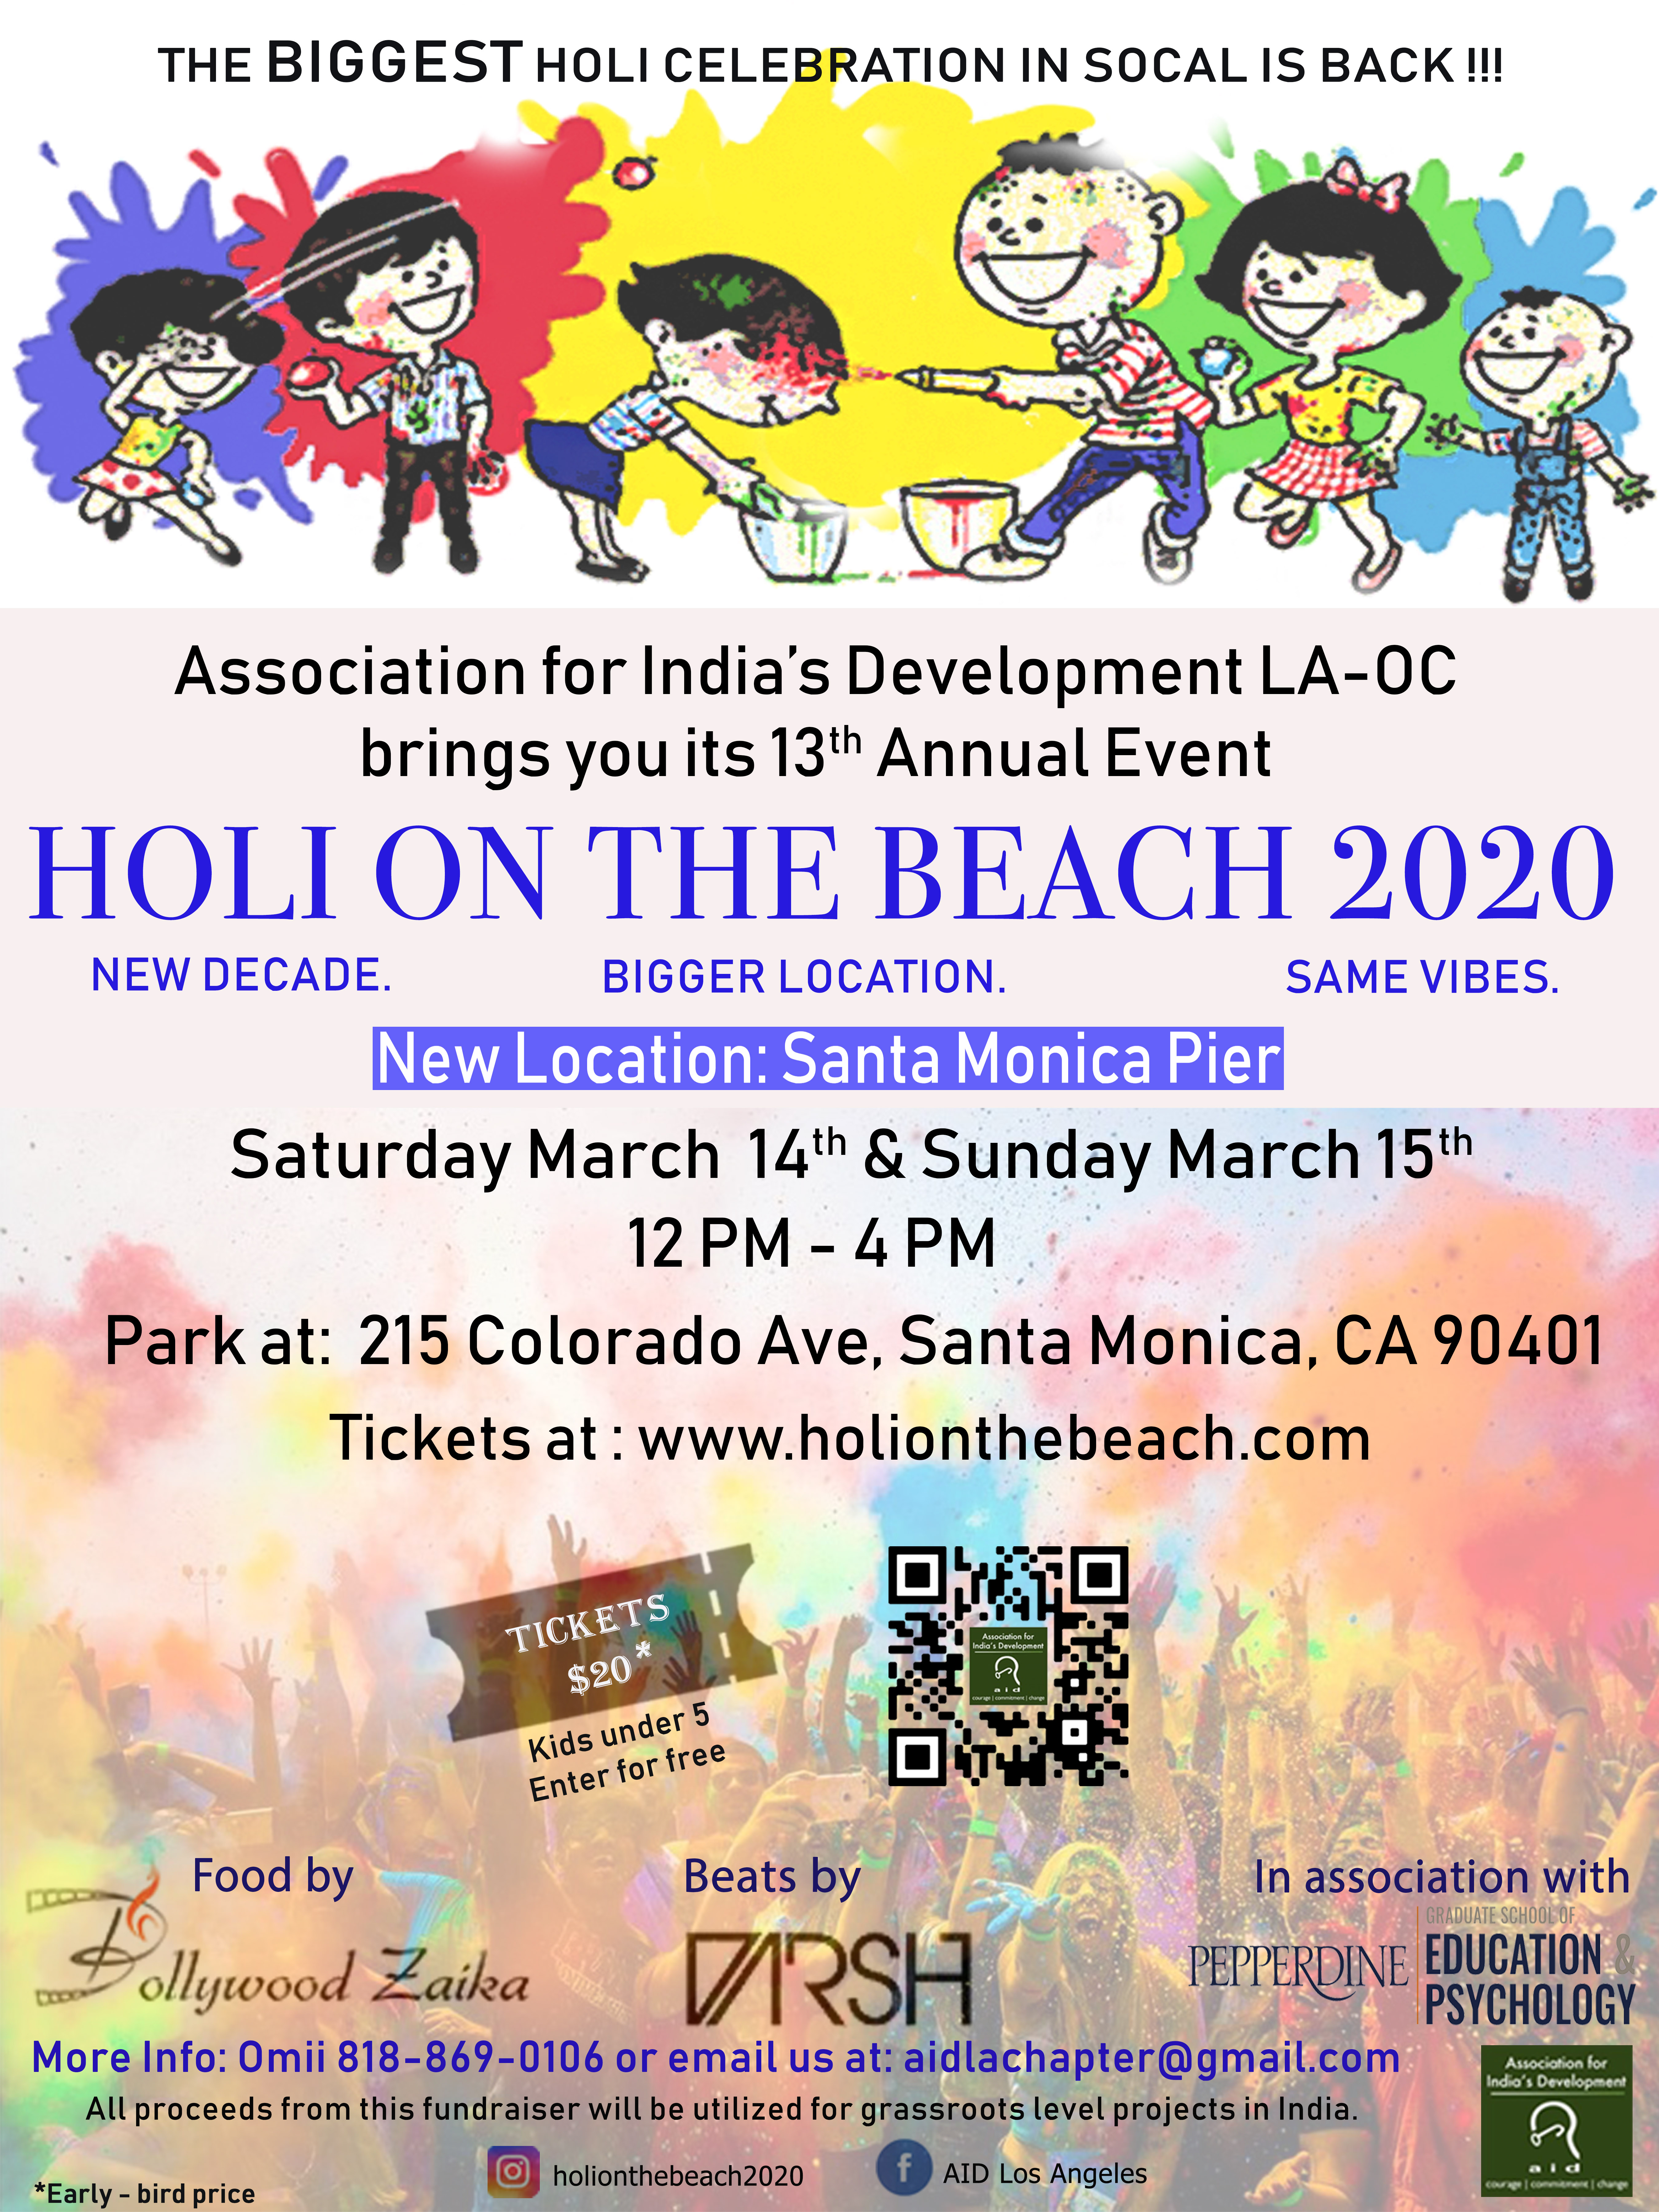 Holi on the Beach 2020 (Festival Of Colors LA-OC) 
Saturday, March 14th